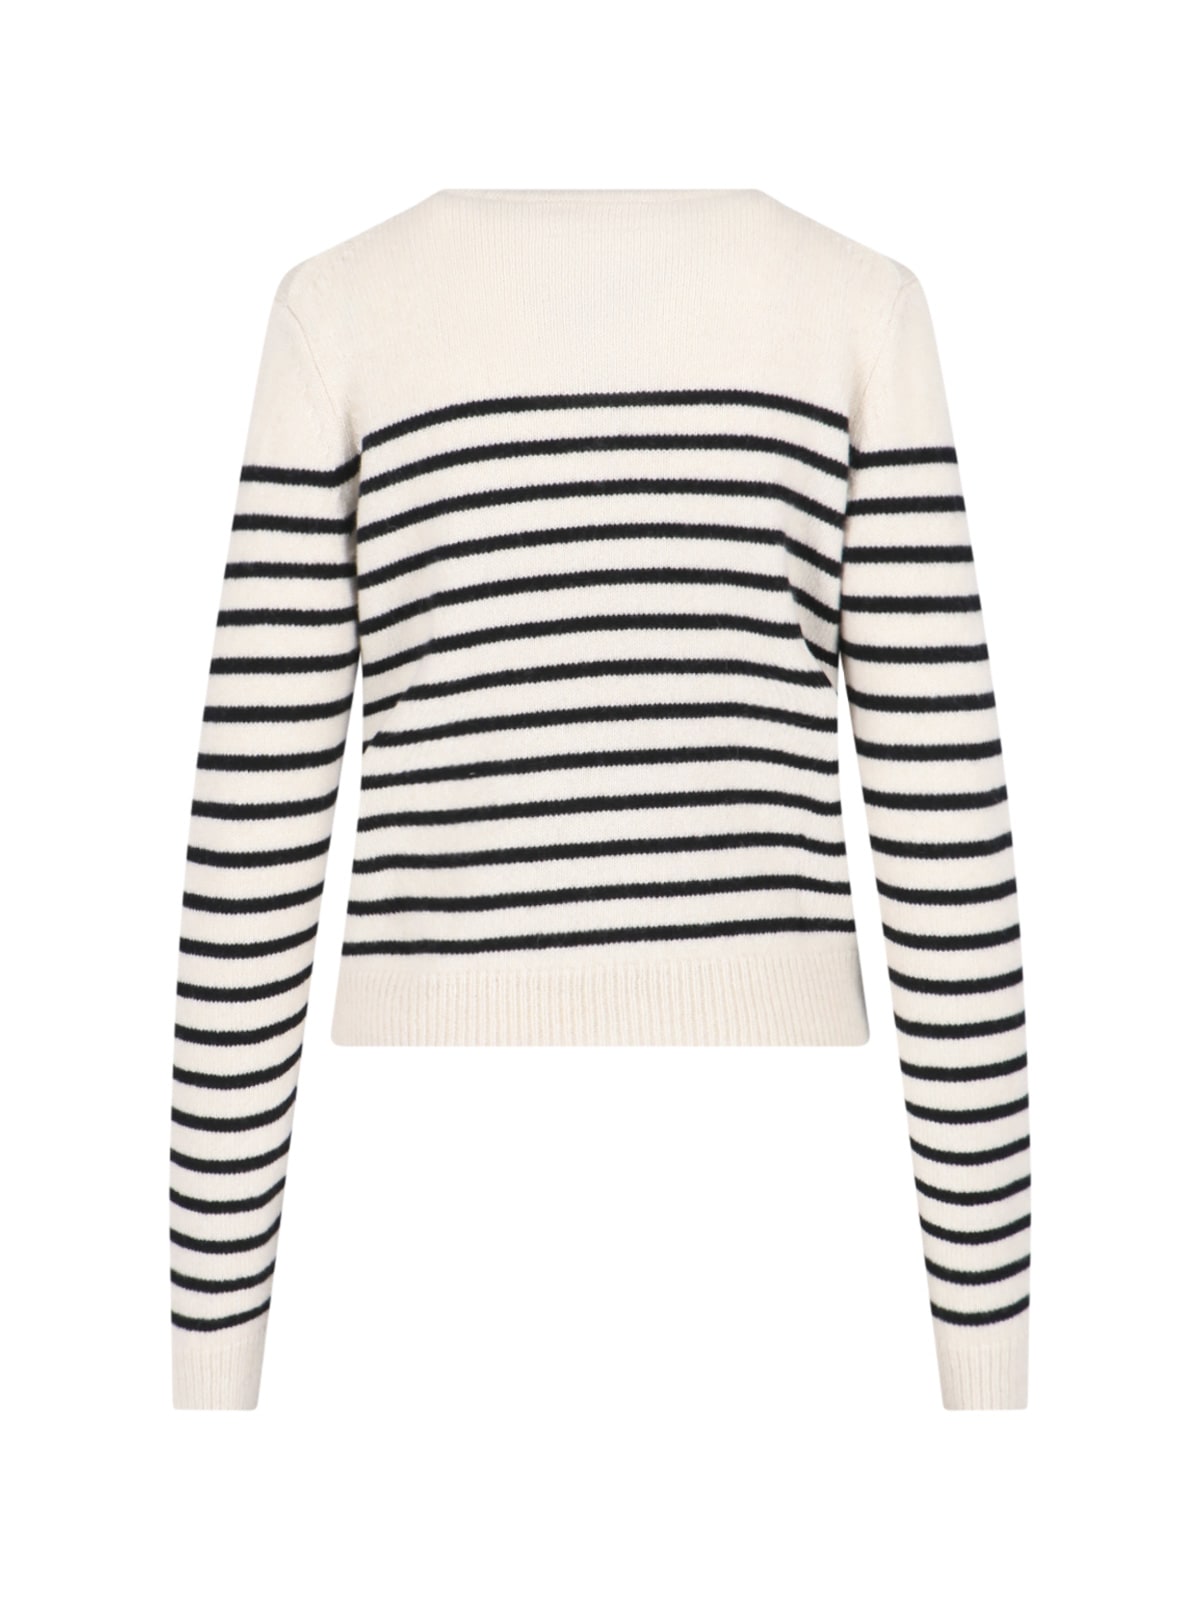 Shop Khaite Striped Sweater In Crema